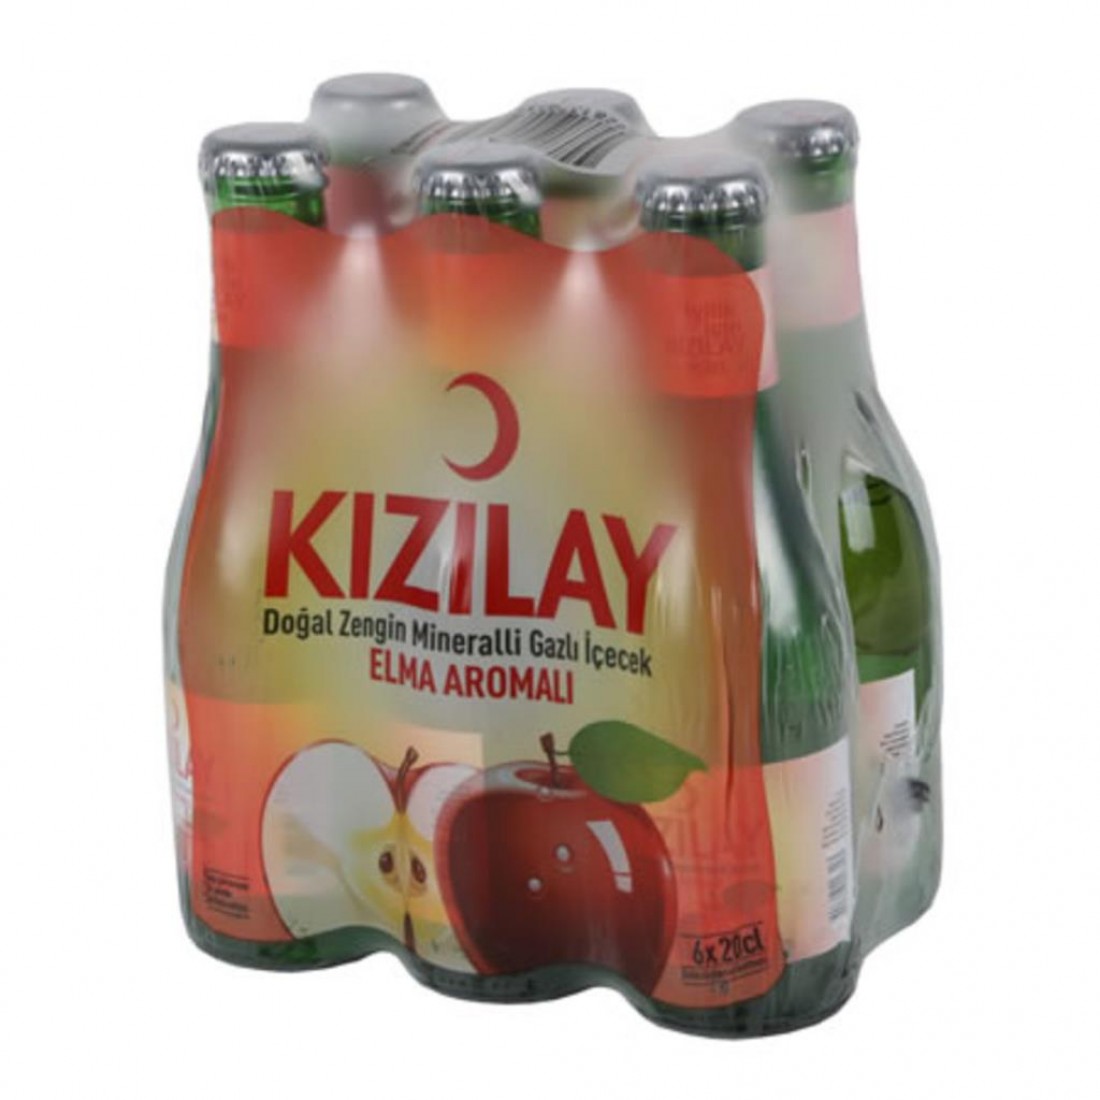 Kizilay elma aromali 6`li soda